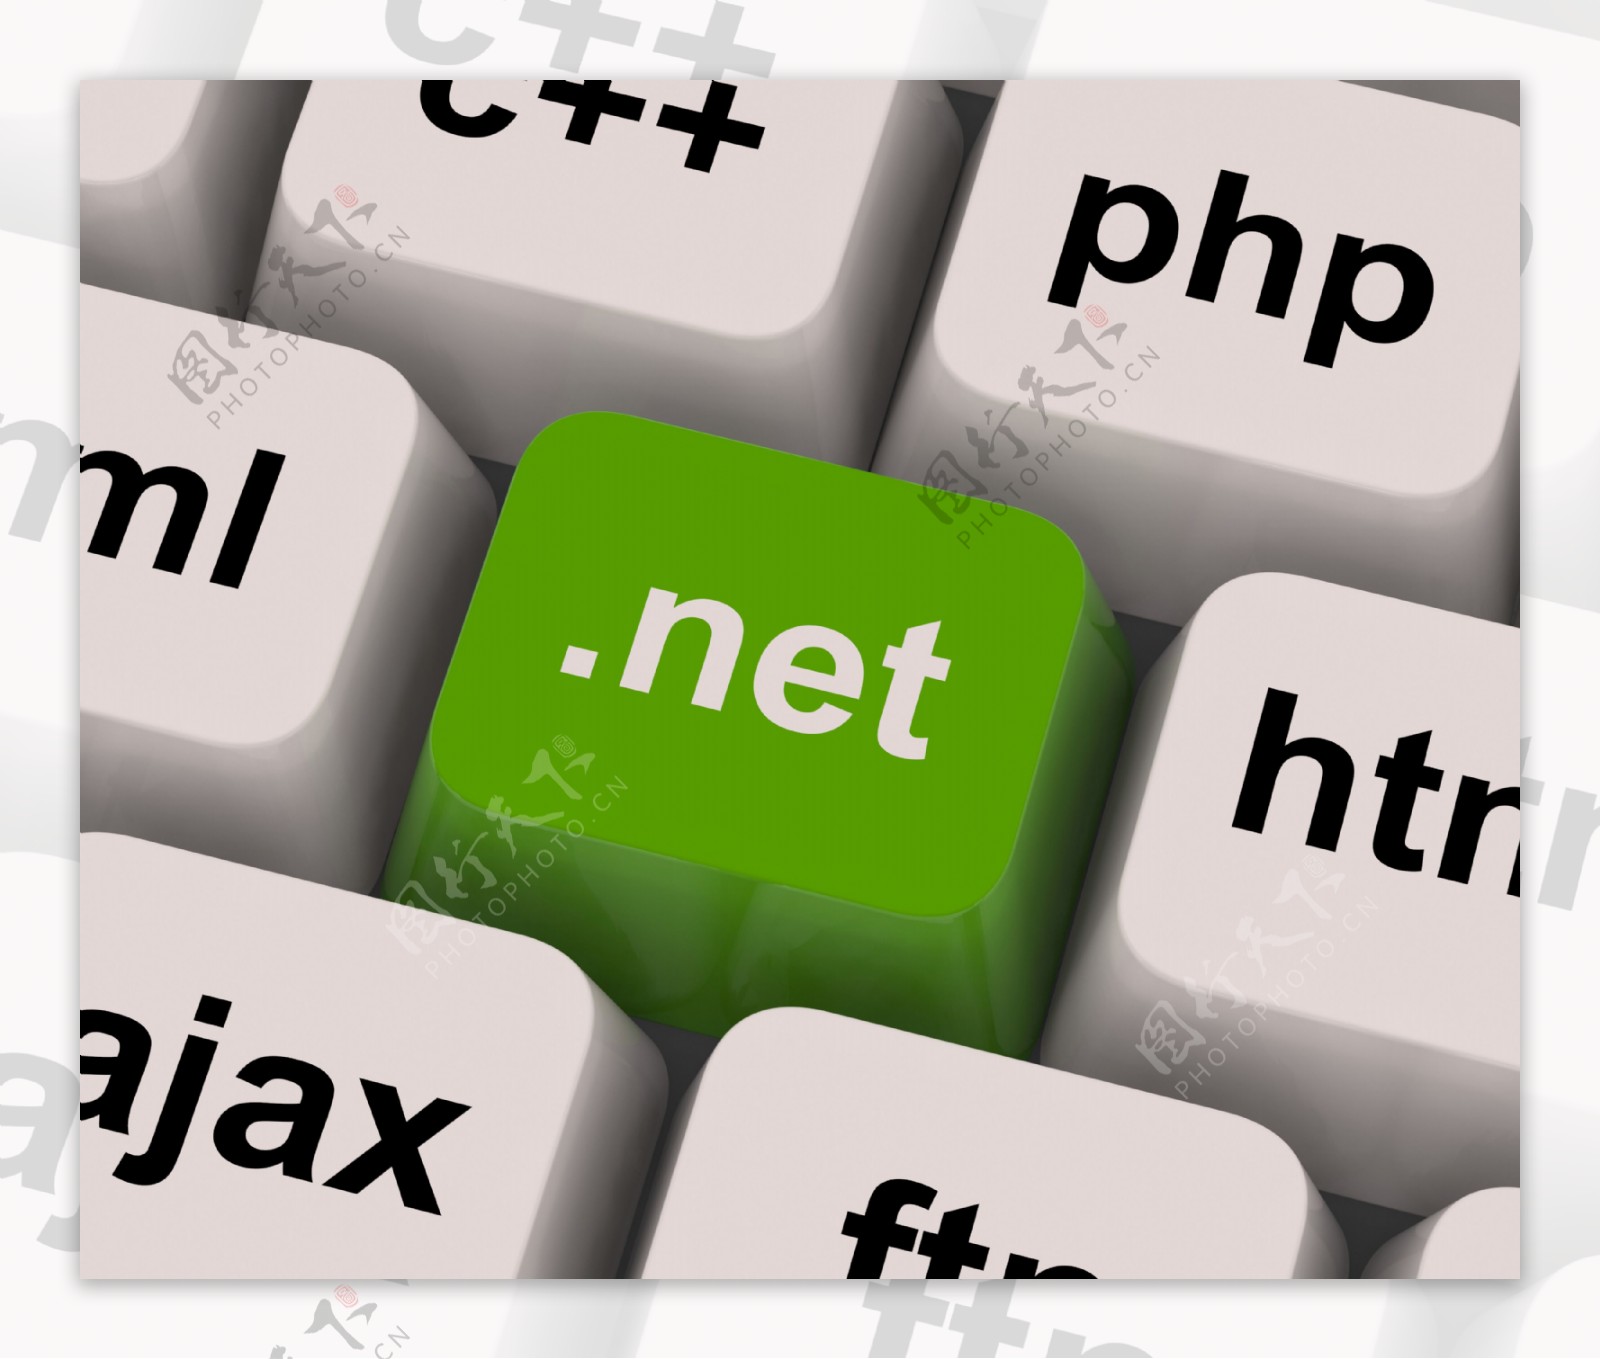 NET键显示的编程语言或域